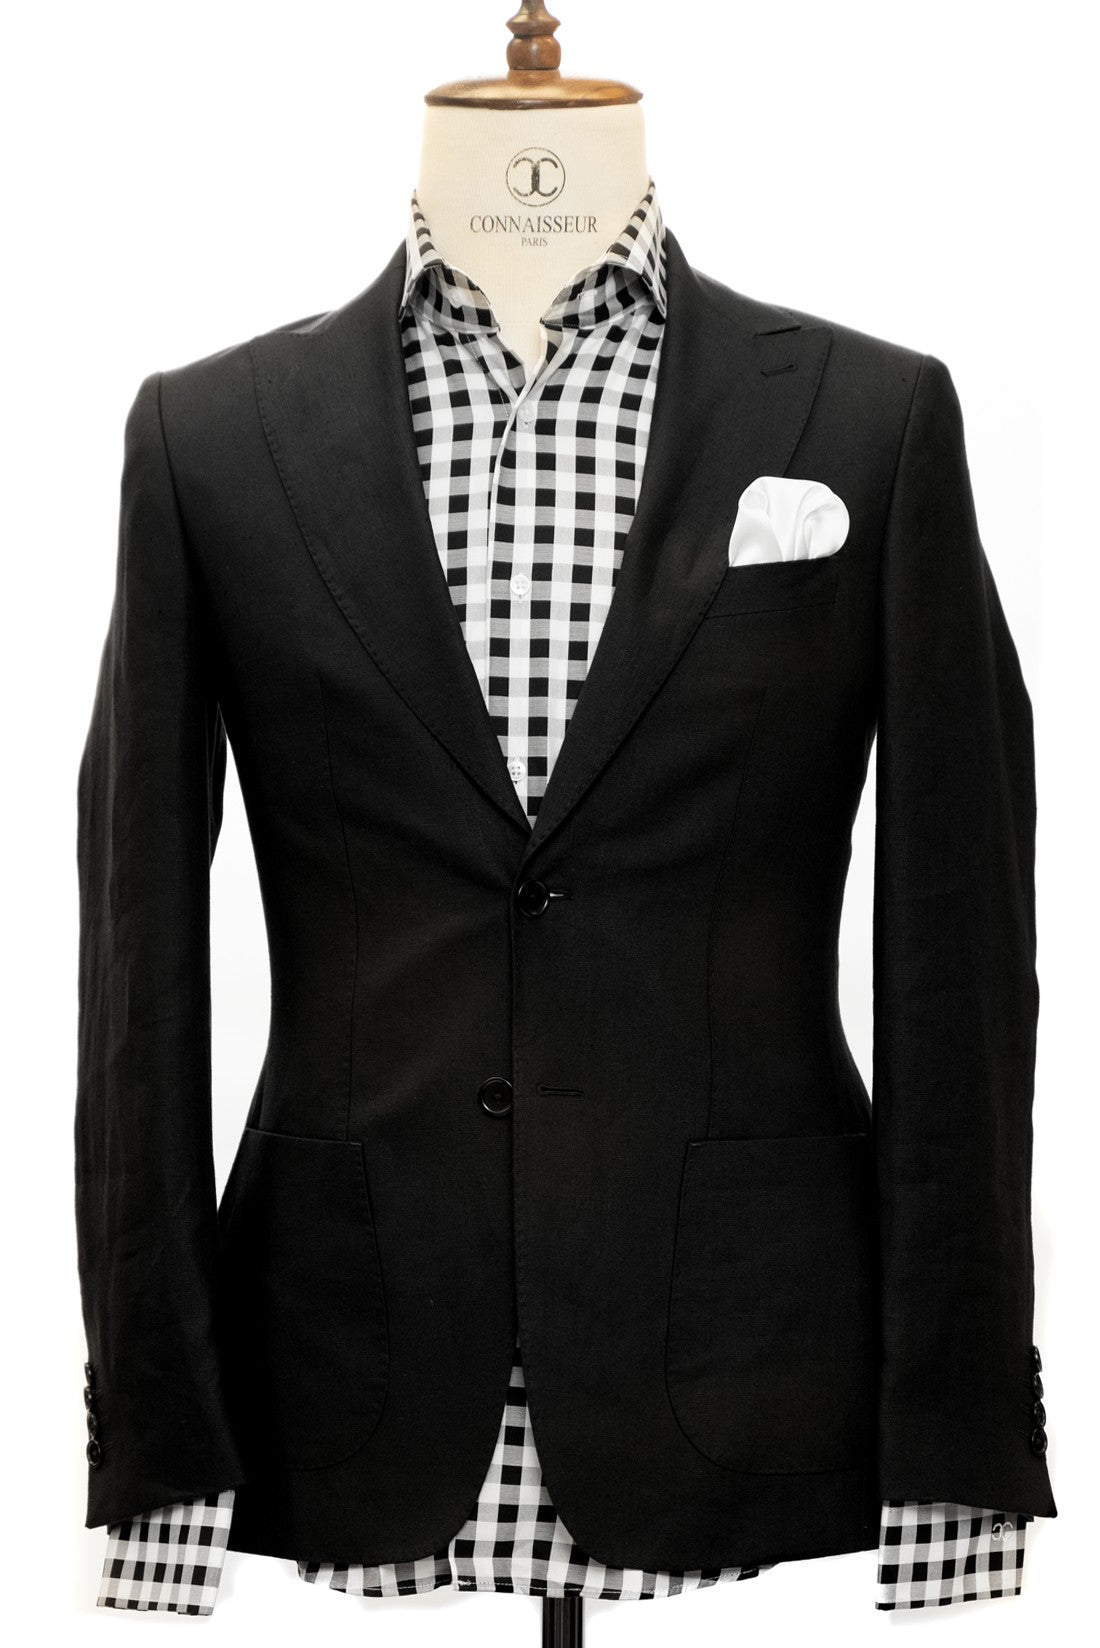 Connaisseur Paris - Black 2 Piece Slim Fit Linen Suit with Patch Pockets